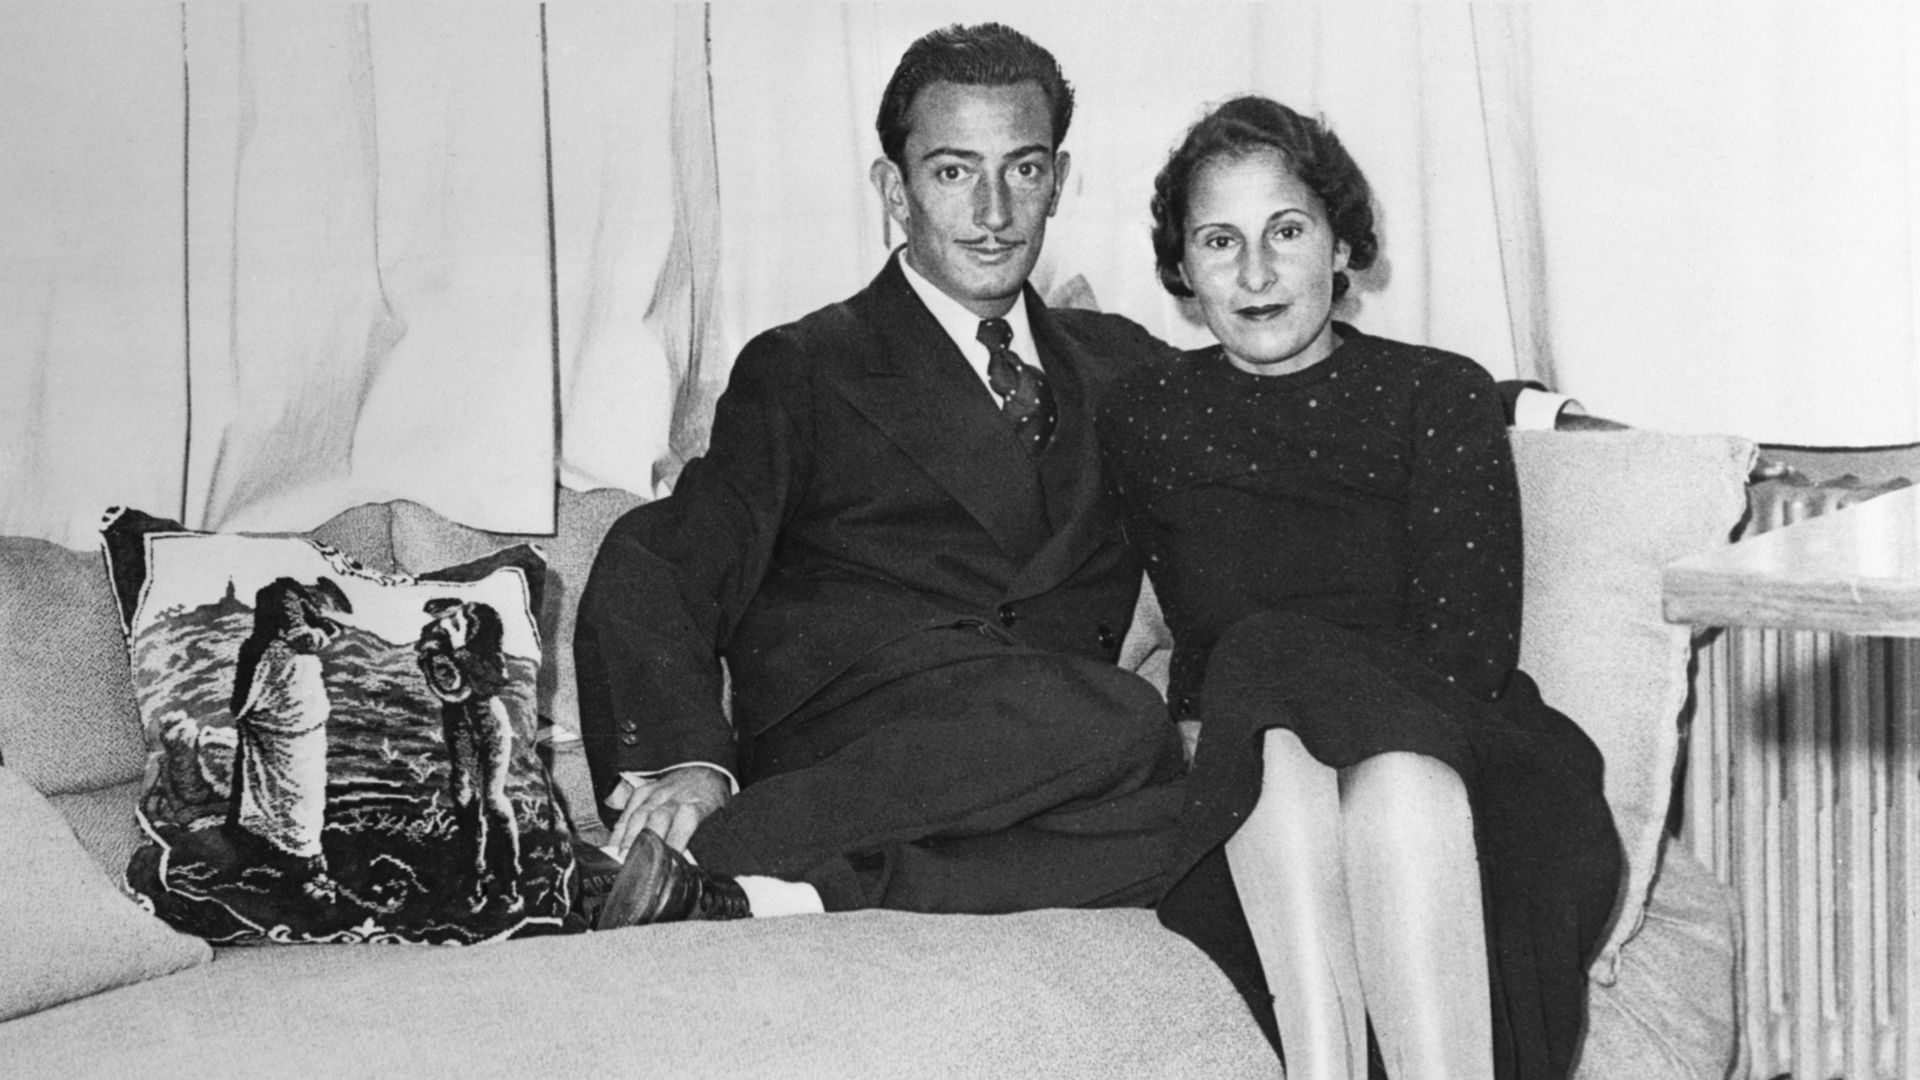 Salvador Dali et Gala, son amour de toujours, dans le studio parisien de Dali en 1934. Gala était mariée au poète Paul Eluard lorsque cette photo a été prise. Après s’être rencontrés en 1929, Dali a finalement persuadé Gala de l’épouser en 1958.